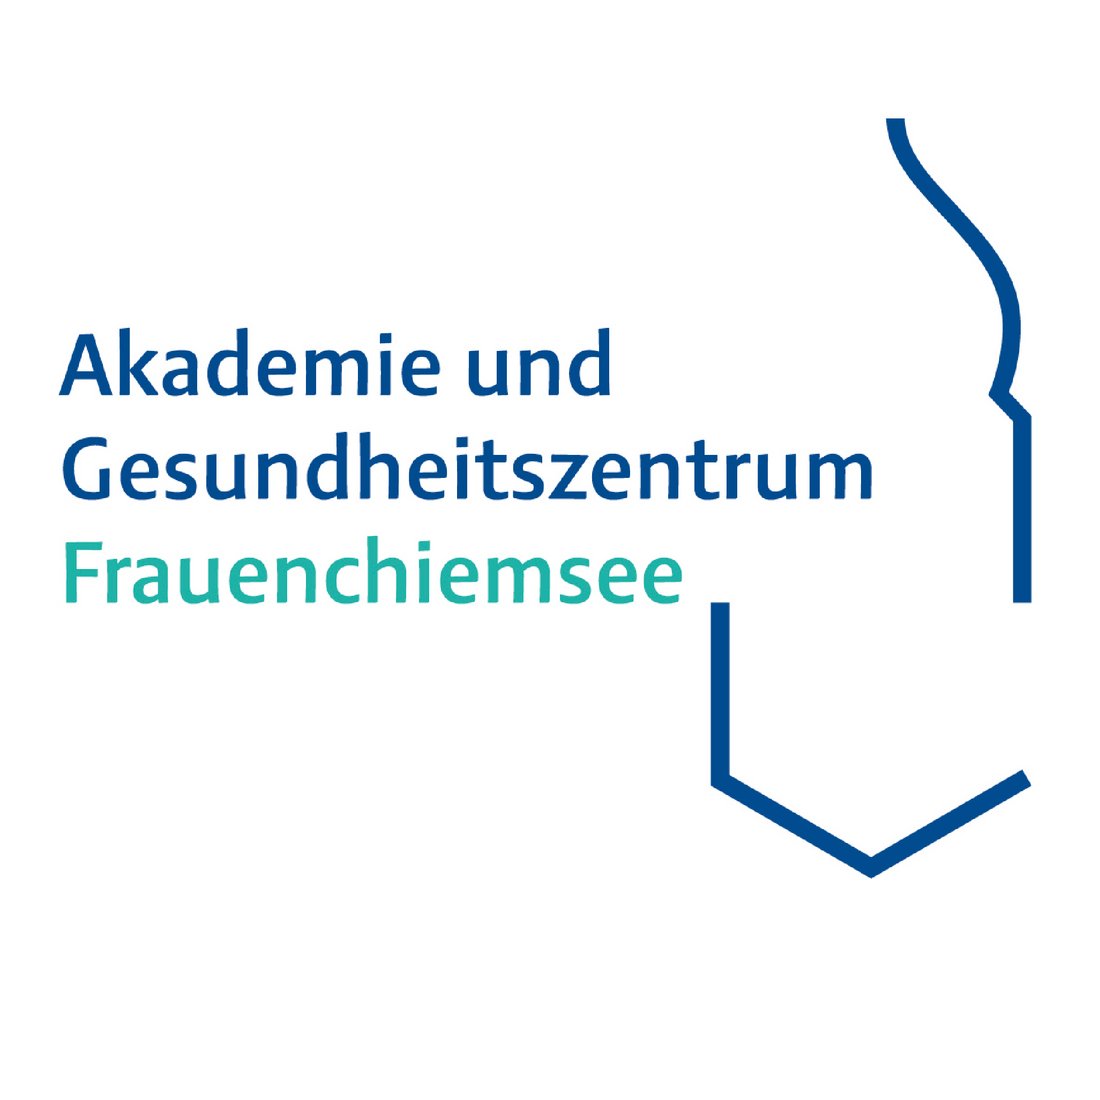 Akademie und Gesundheitszentrum Frauenchiemsee GmbH